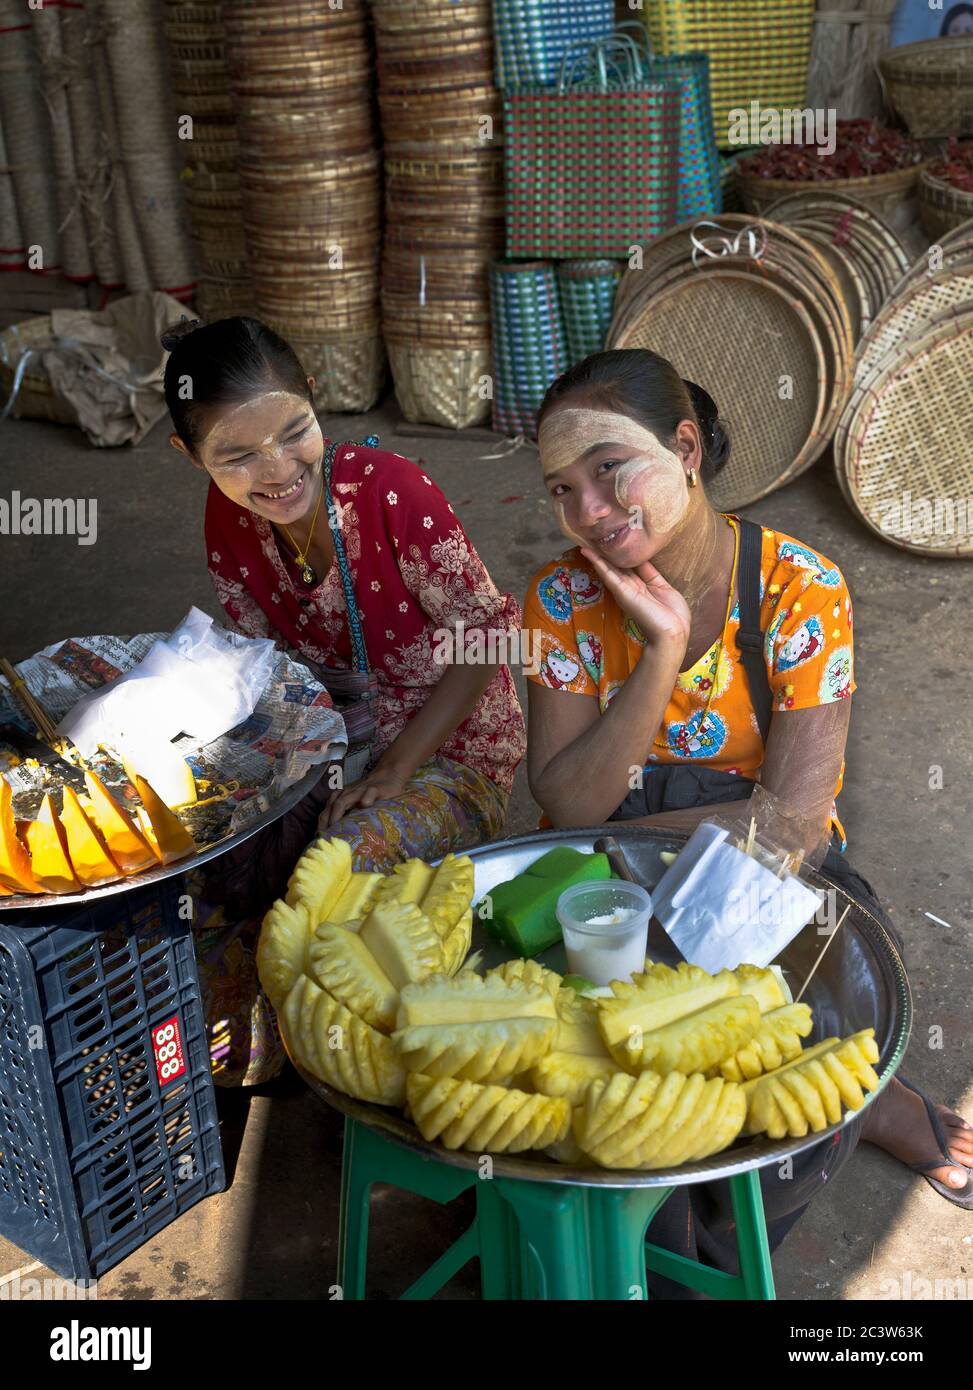 dh Thanlyin Myo Ma vendedor de mercado YANGON MYANMAR local birmano niñas thanaka corteza maquillaje crema venta de frutas gente chica mujer mujeres de alimentos de la calle asia Foto de stock